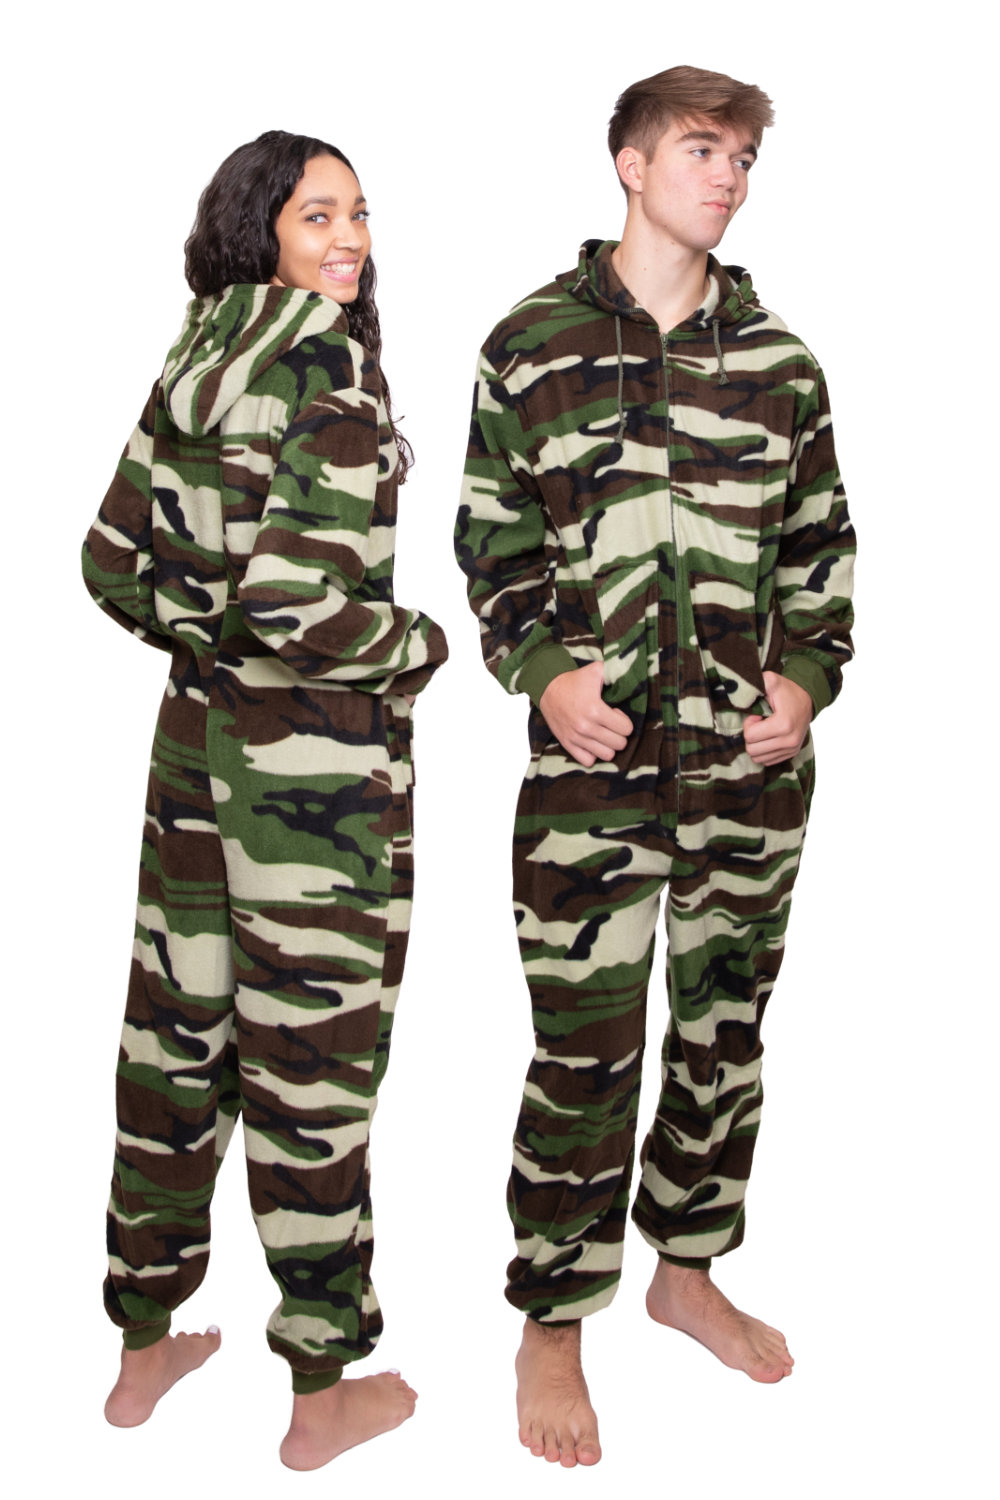 Camouflage Hoodie Onesie Pajamas With Hood, Adults, Footless